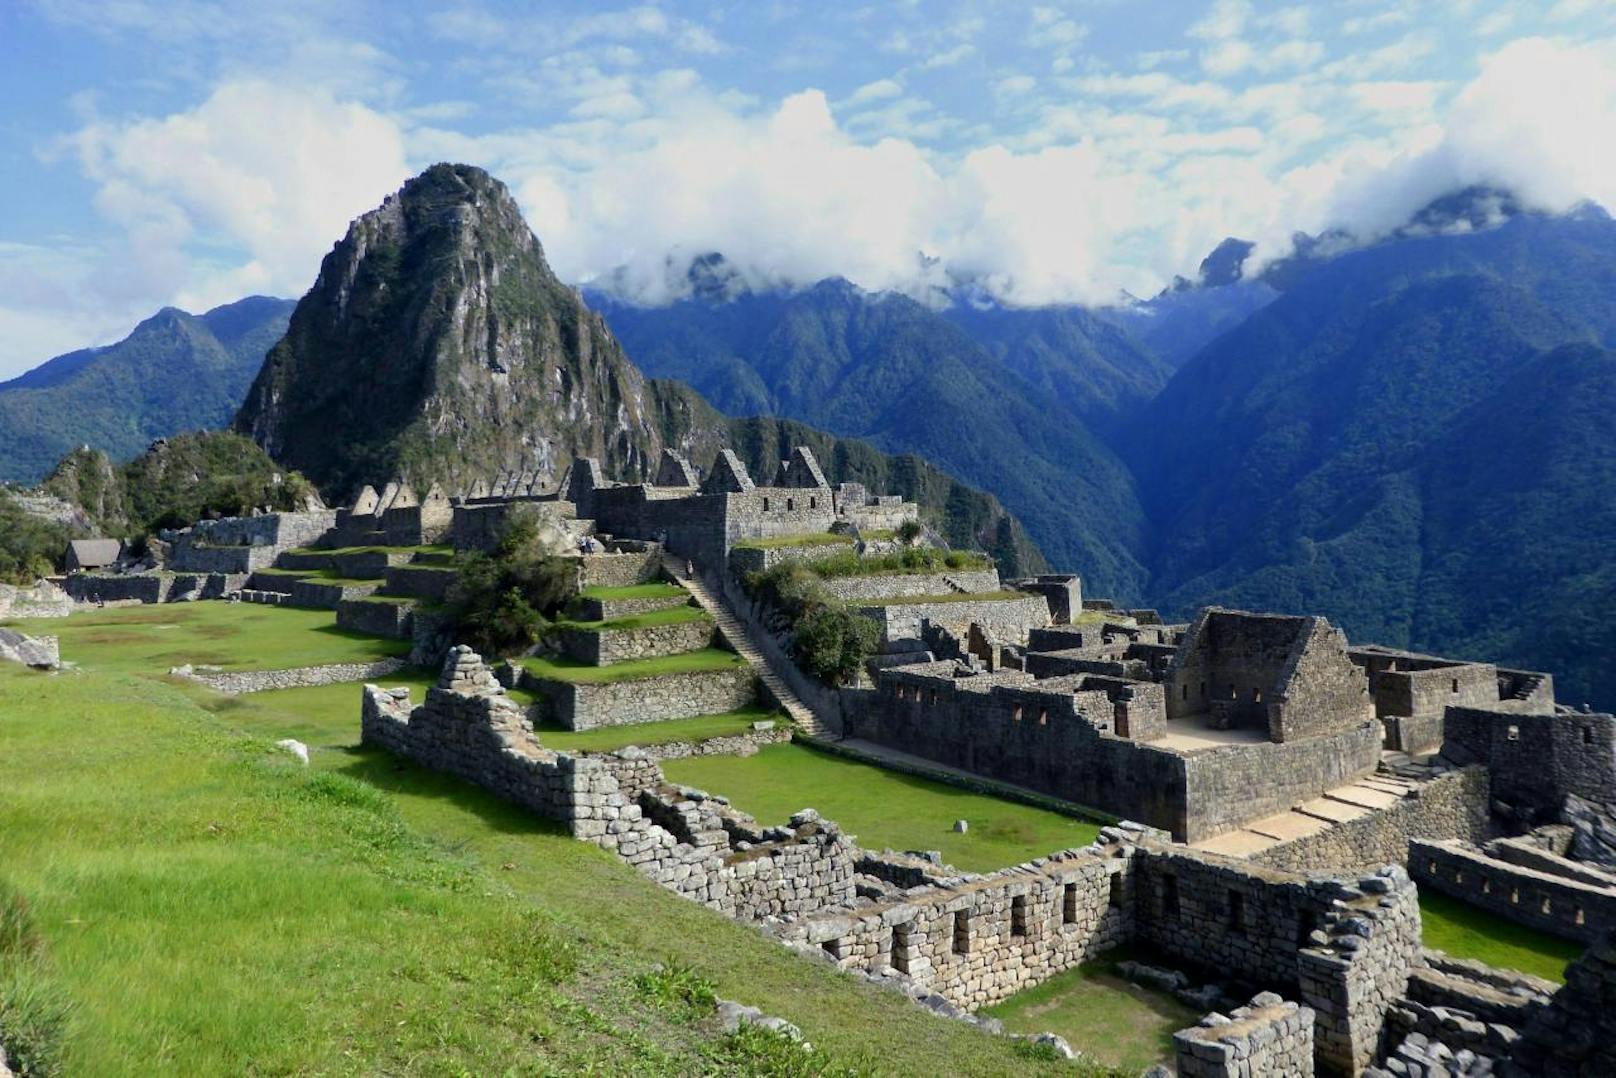 Vielleicht habt ihr schon genug von den Bildern des Machu Picchu, aber das sollte euch nicht davon abhalten, den alten Weg der Inka zu gehen und dieses Wunder mit eigenen Augen zu sehen. <b>Peru</b> ist kein Geheimtipp und ziemlich touristisch, aber das macht es für Backpacker nicht weniger attraktiv.